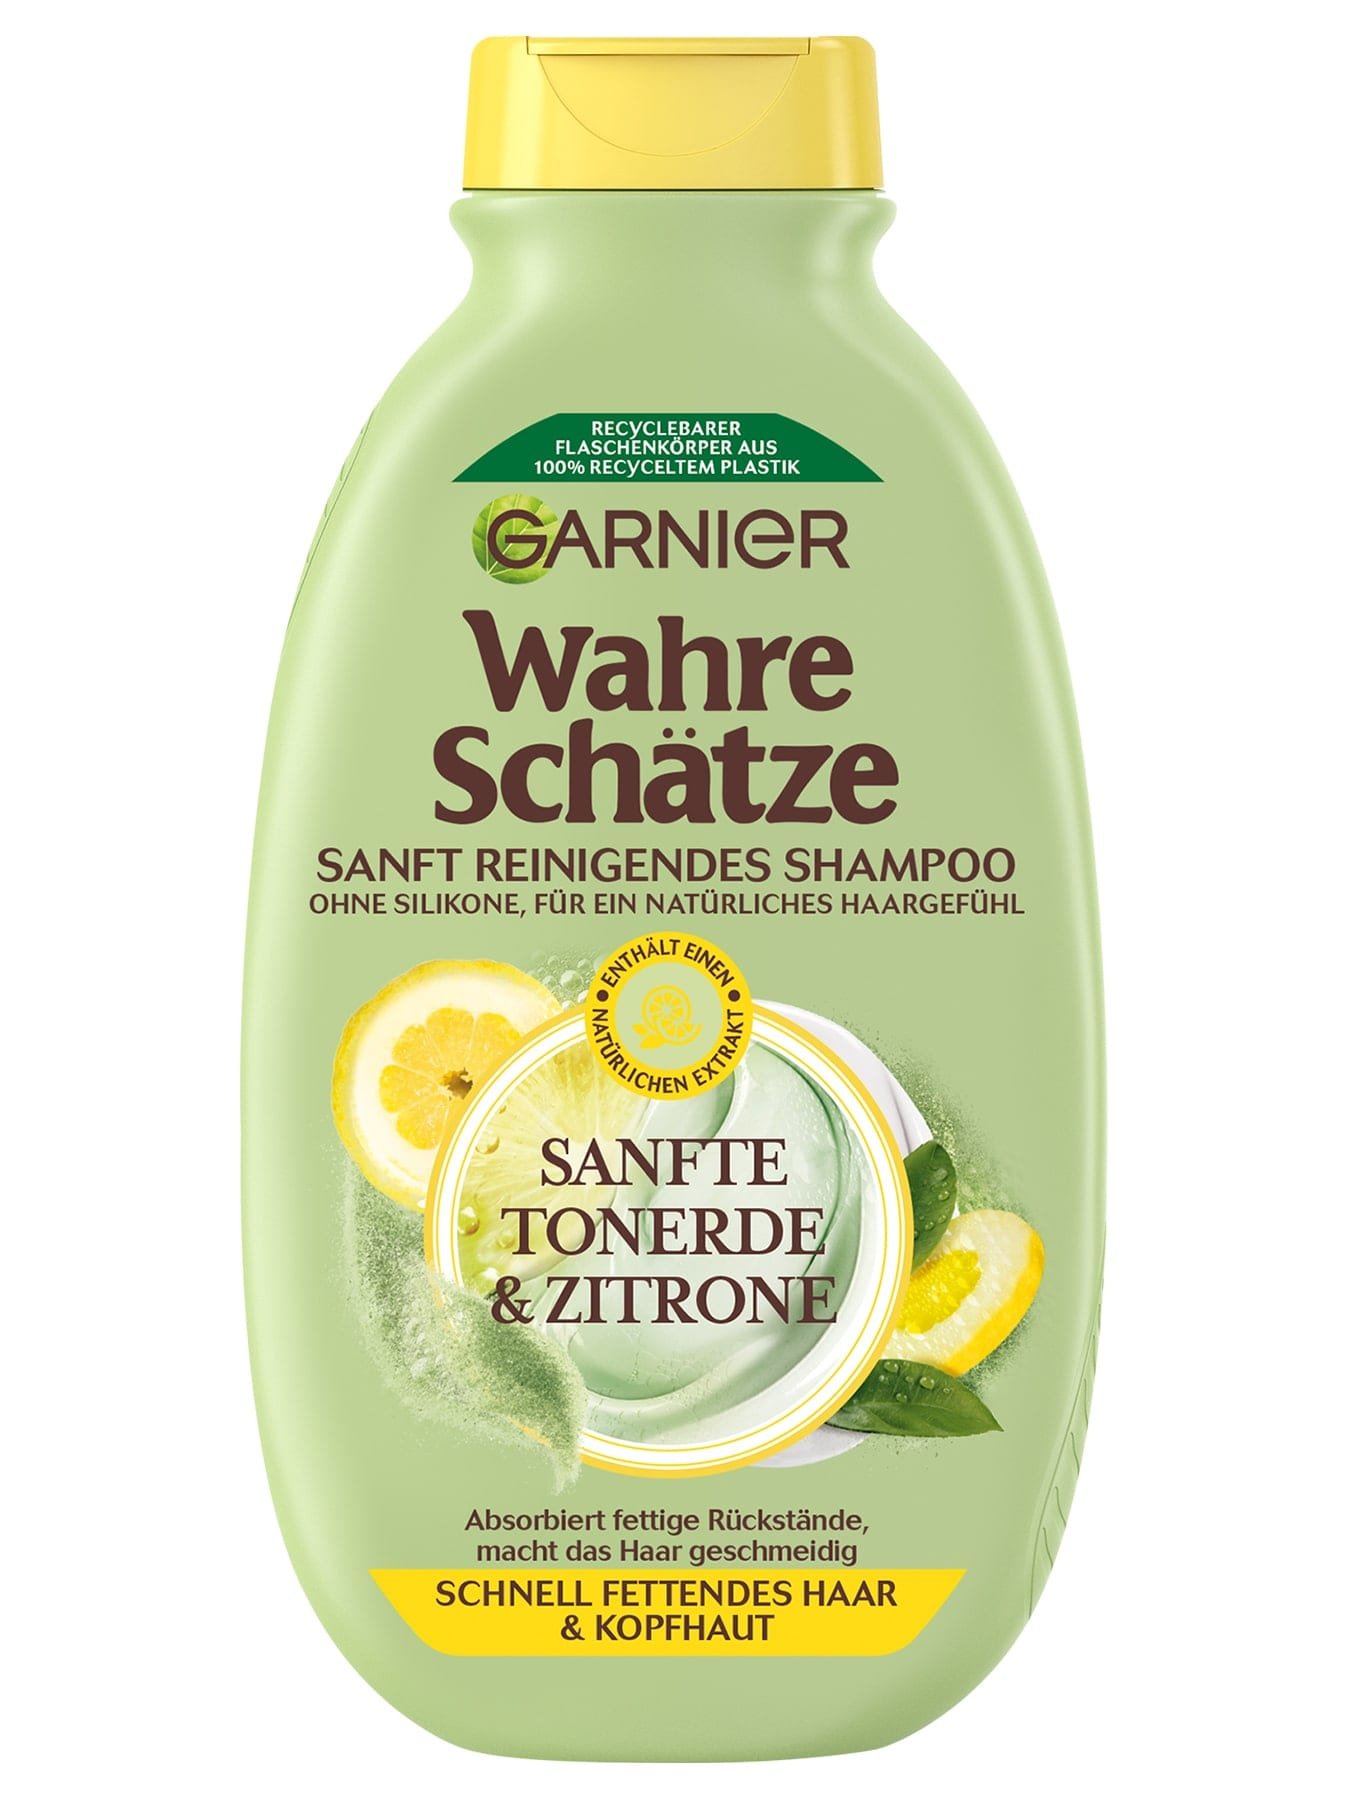  Wahre Schätze Sanft Reinigendes Shampoo Tonerde & Zitrone - Produktabbildung